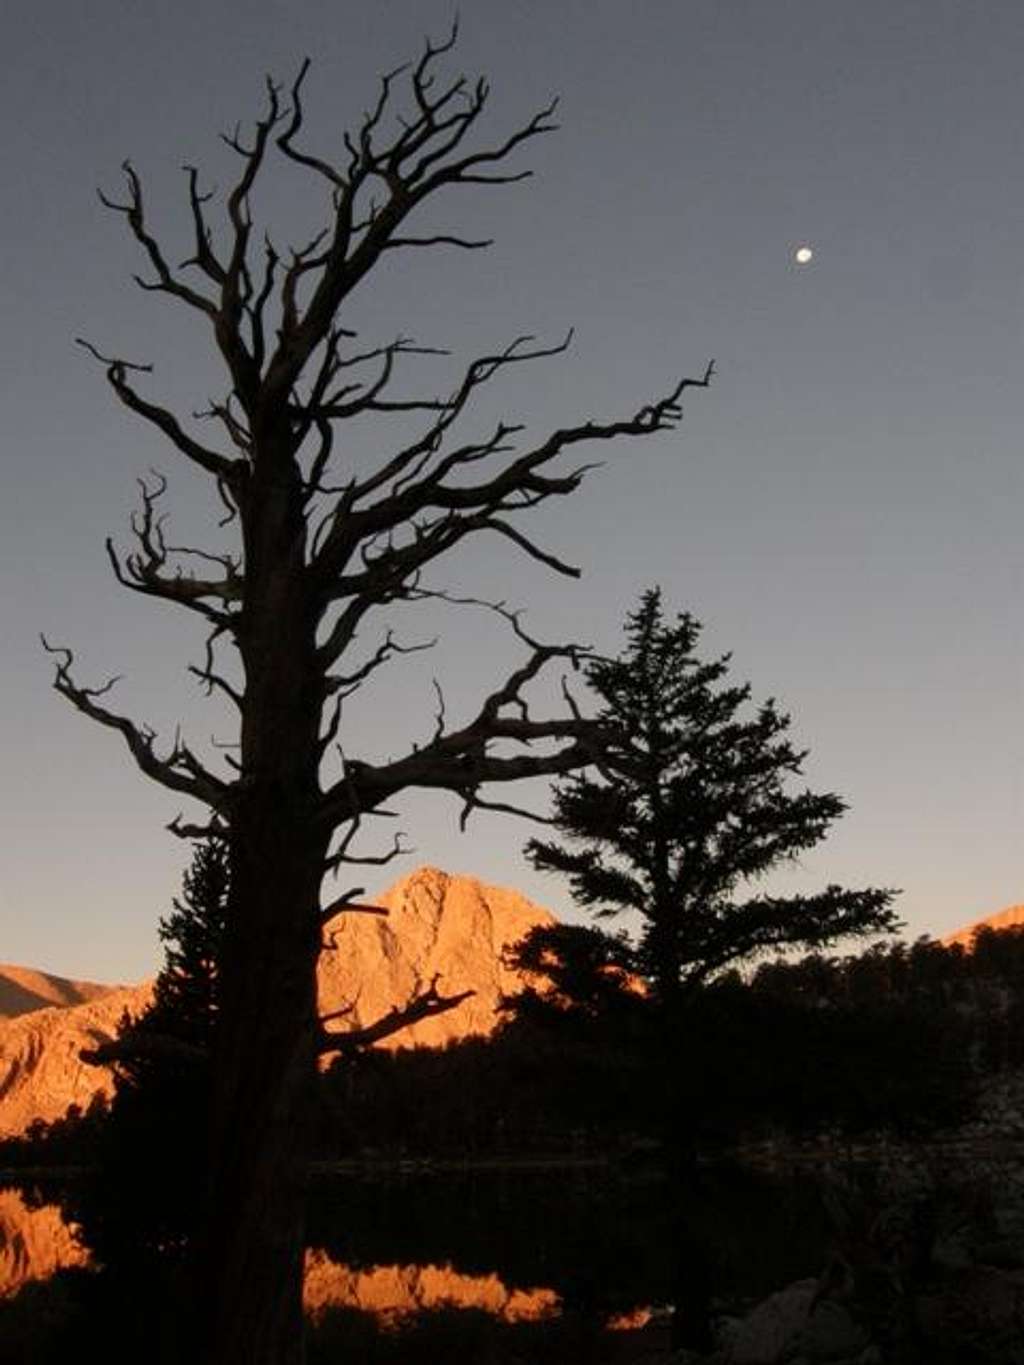 Dead tree, moon, & alpenglow